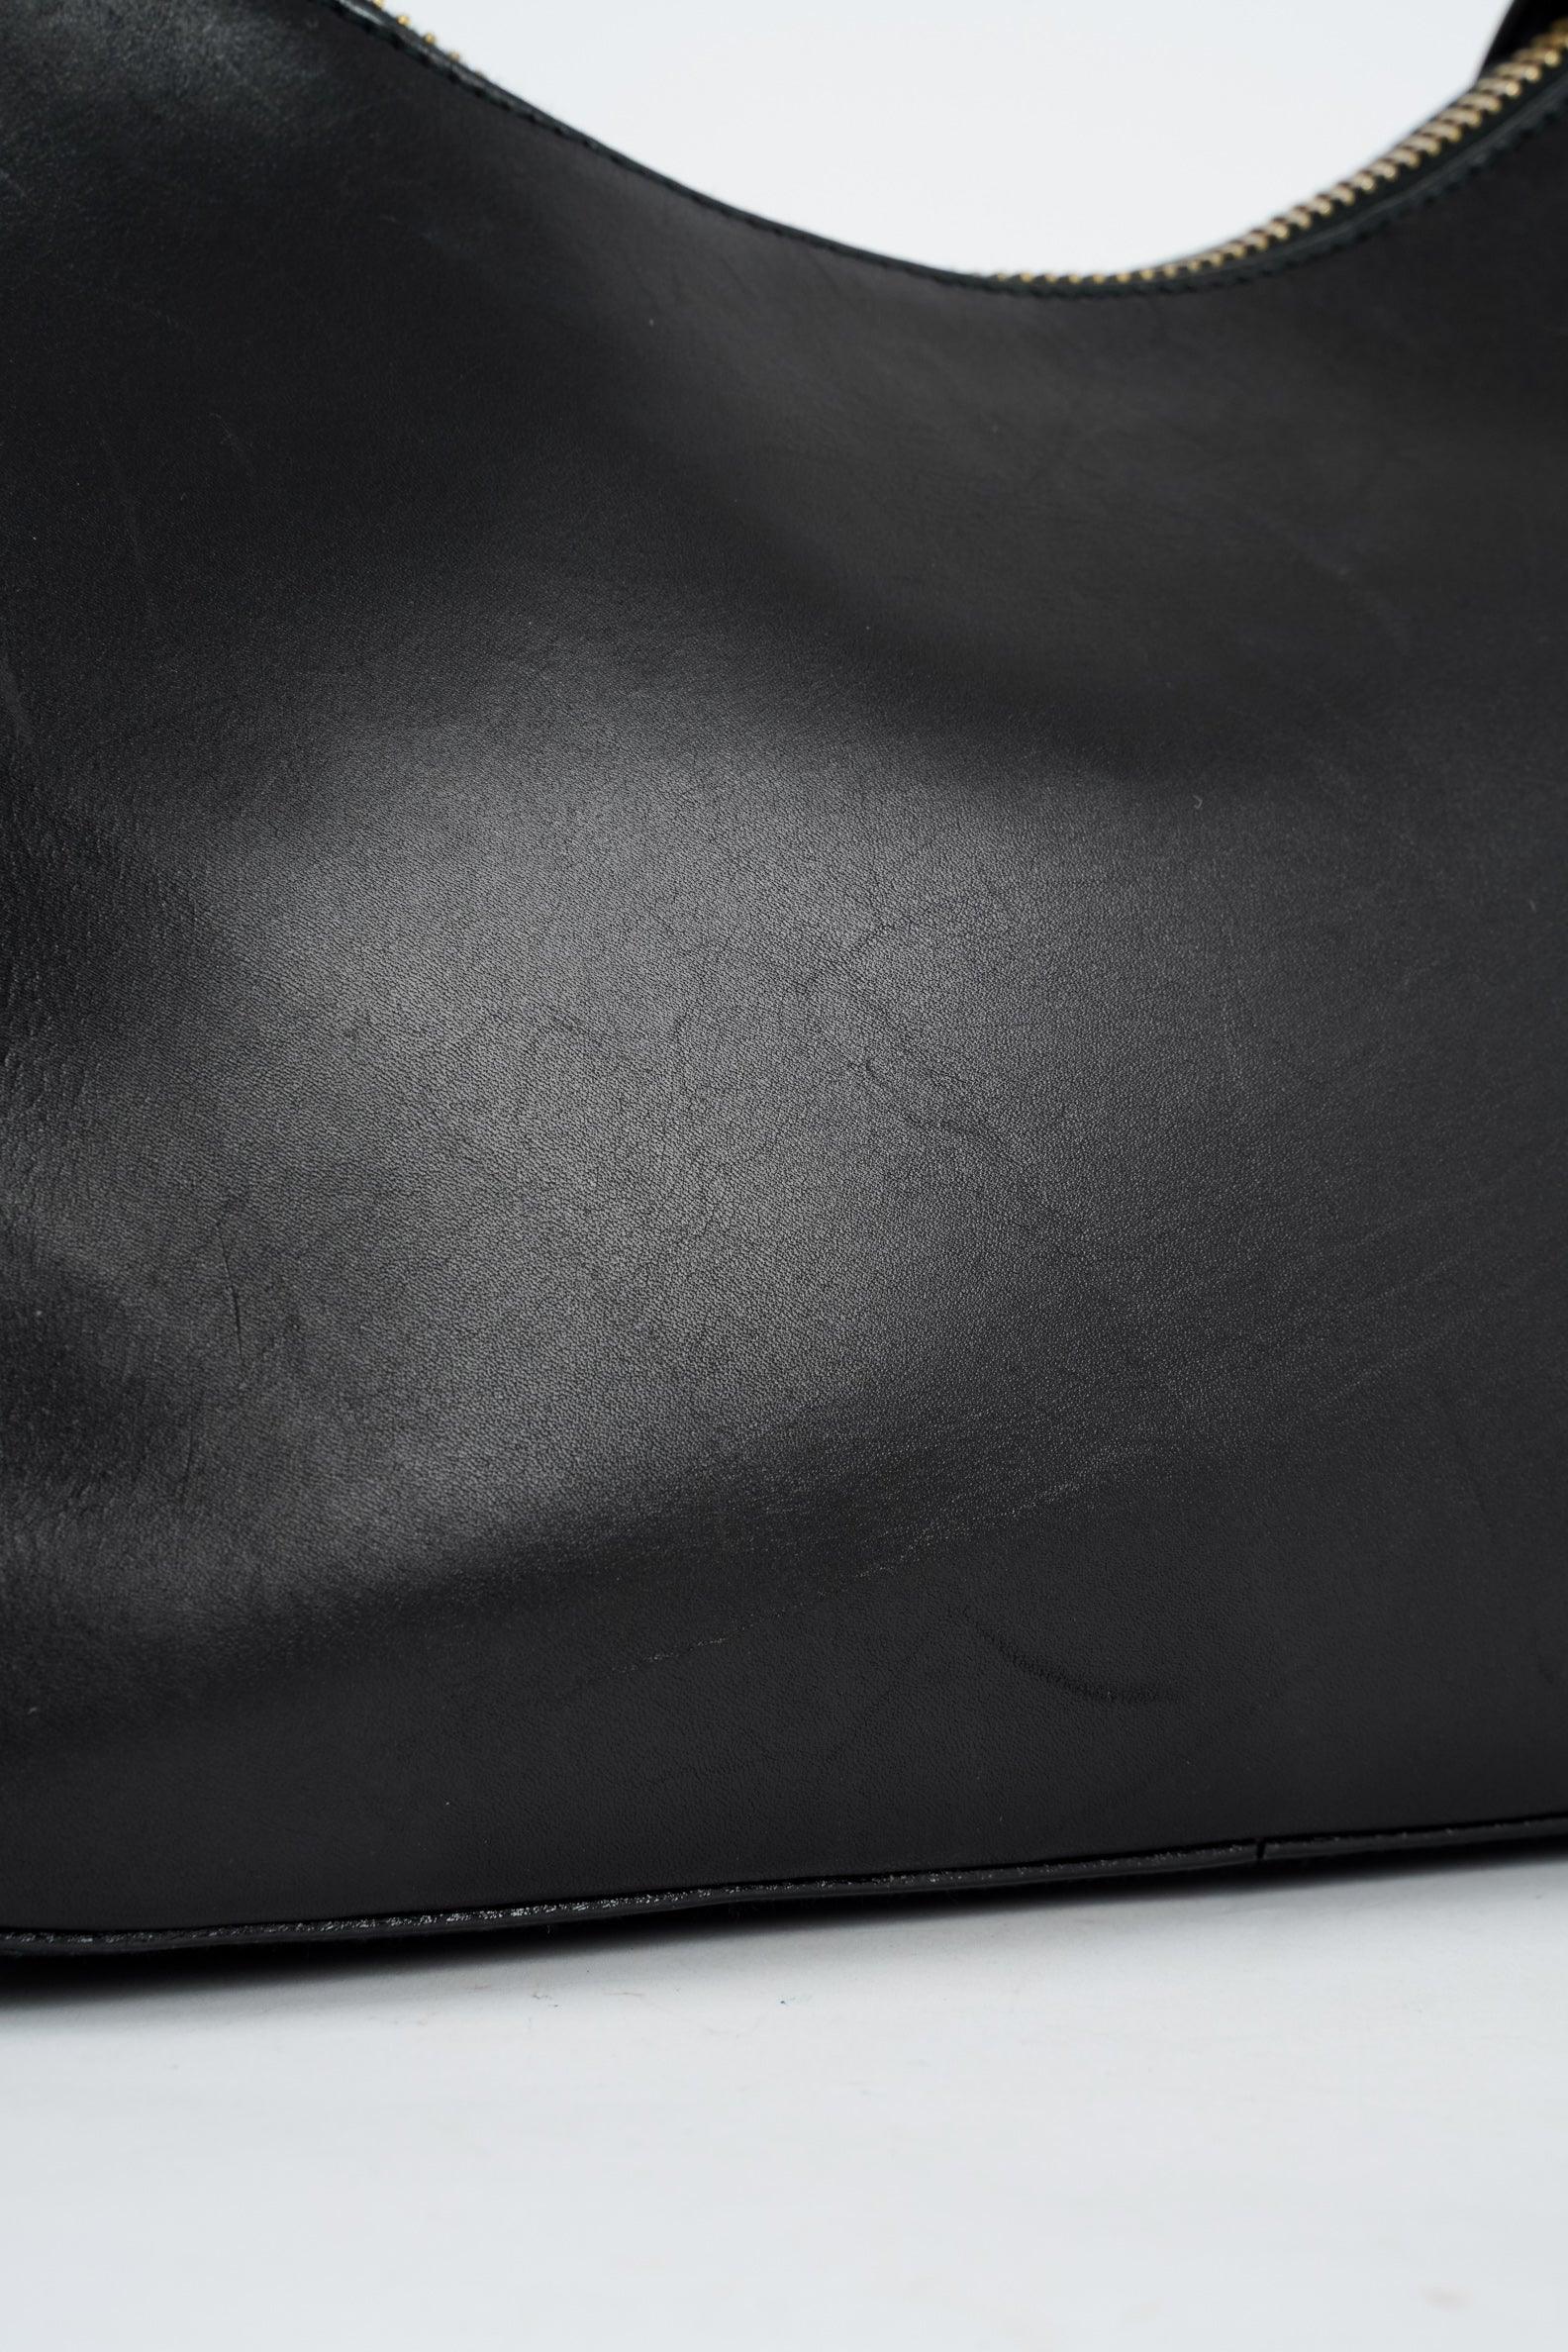 Black Leather Bag - Volver